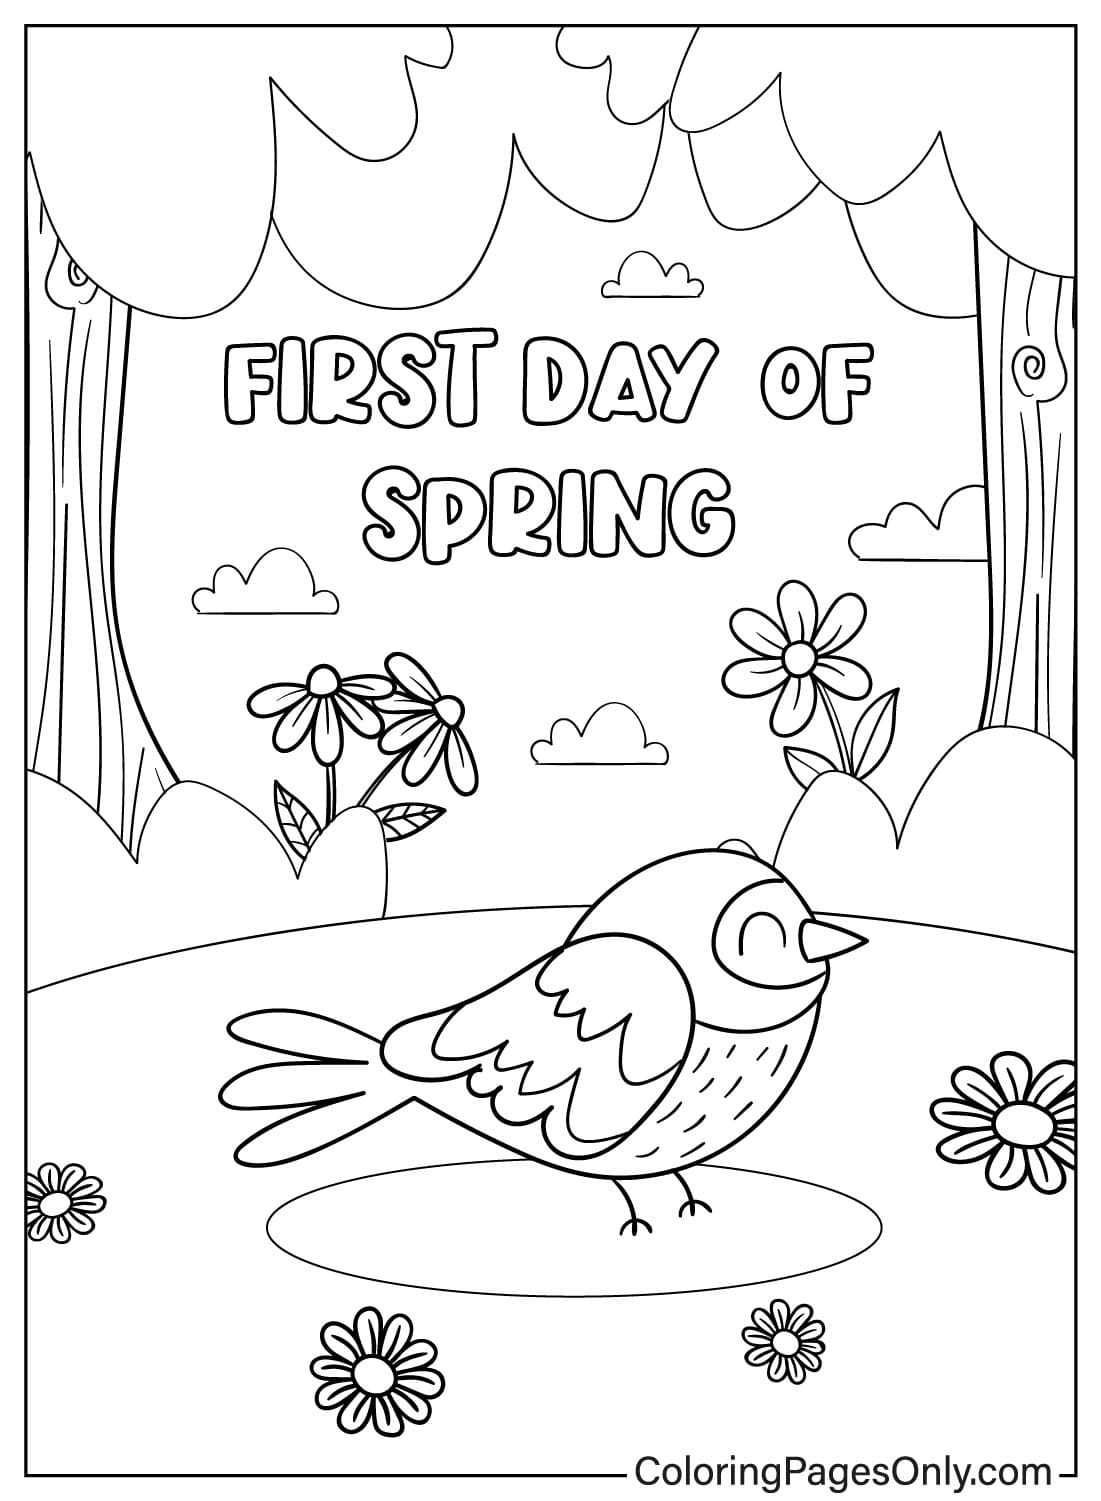 Página para colorear del primer día de primavera de Primer día de primavera